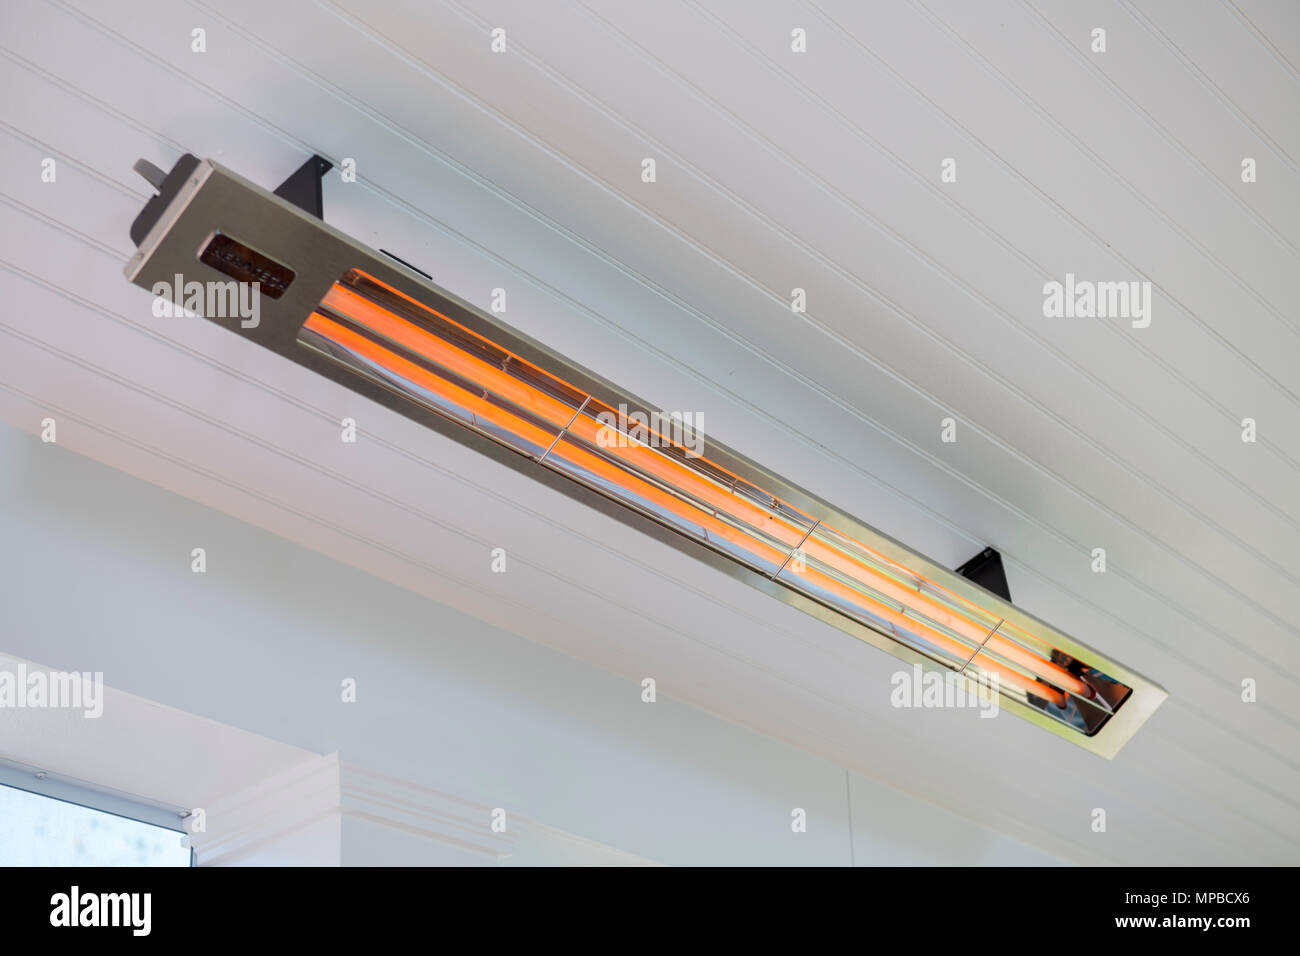 Un chauffage infrarouge électrique sur une véranda assure le rayonnement de chaleur par temps froid Banque D'Images